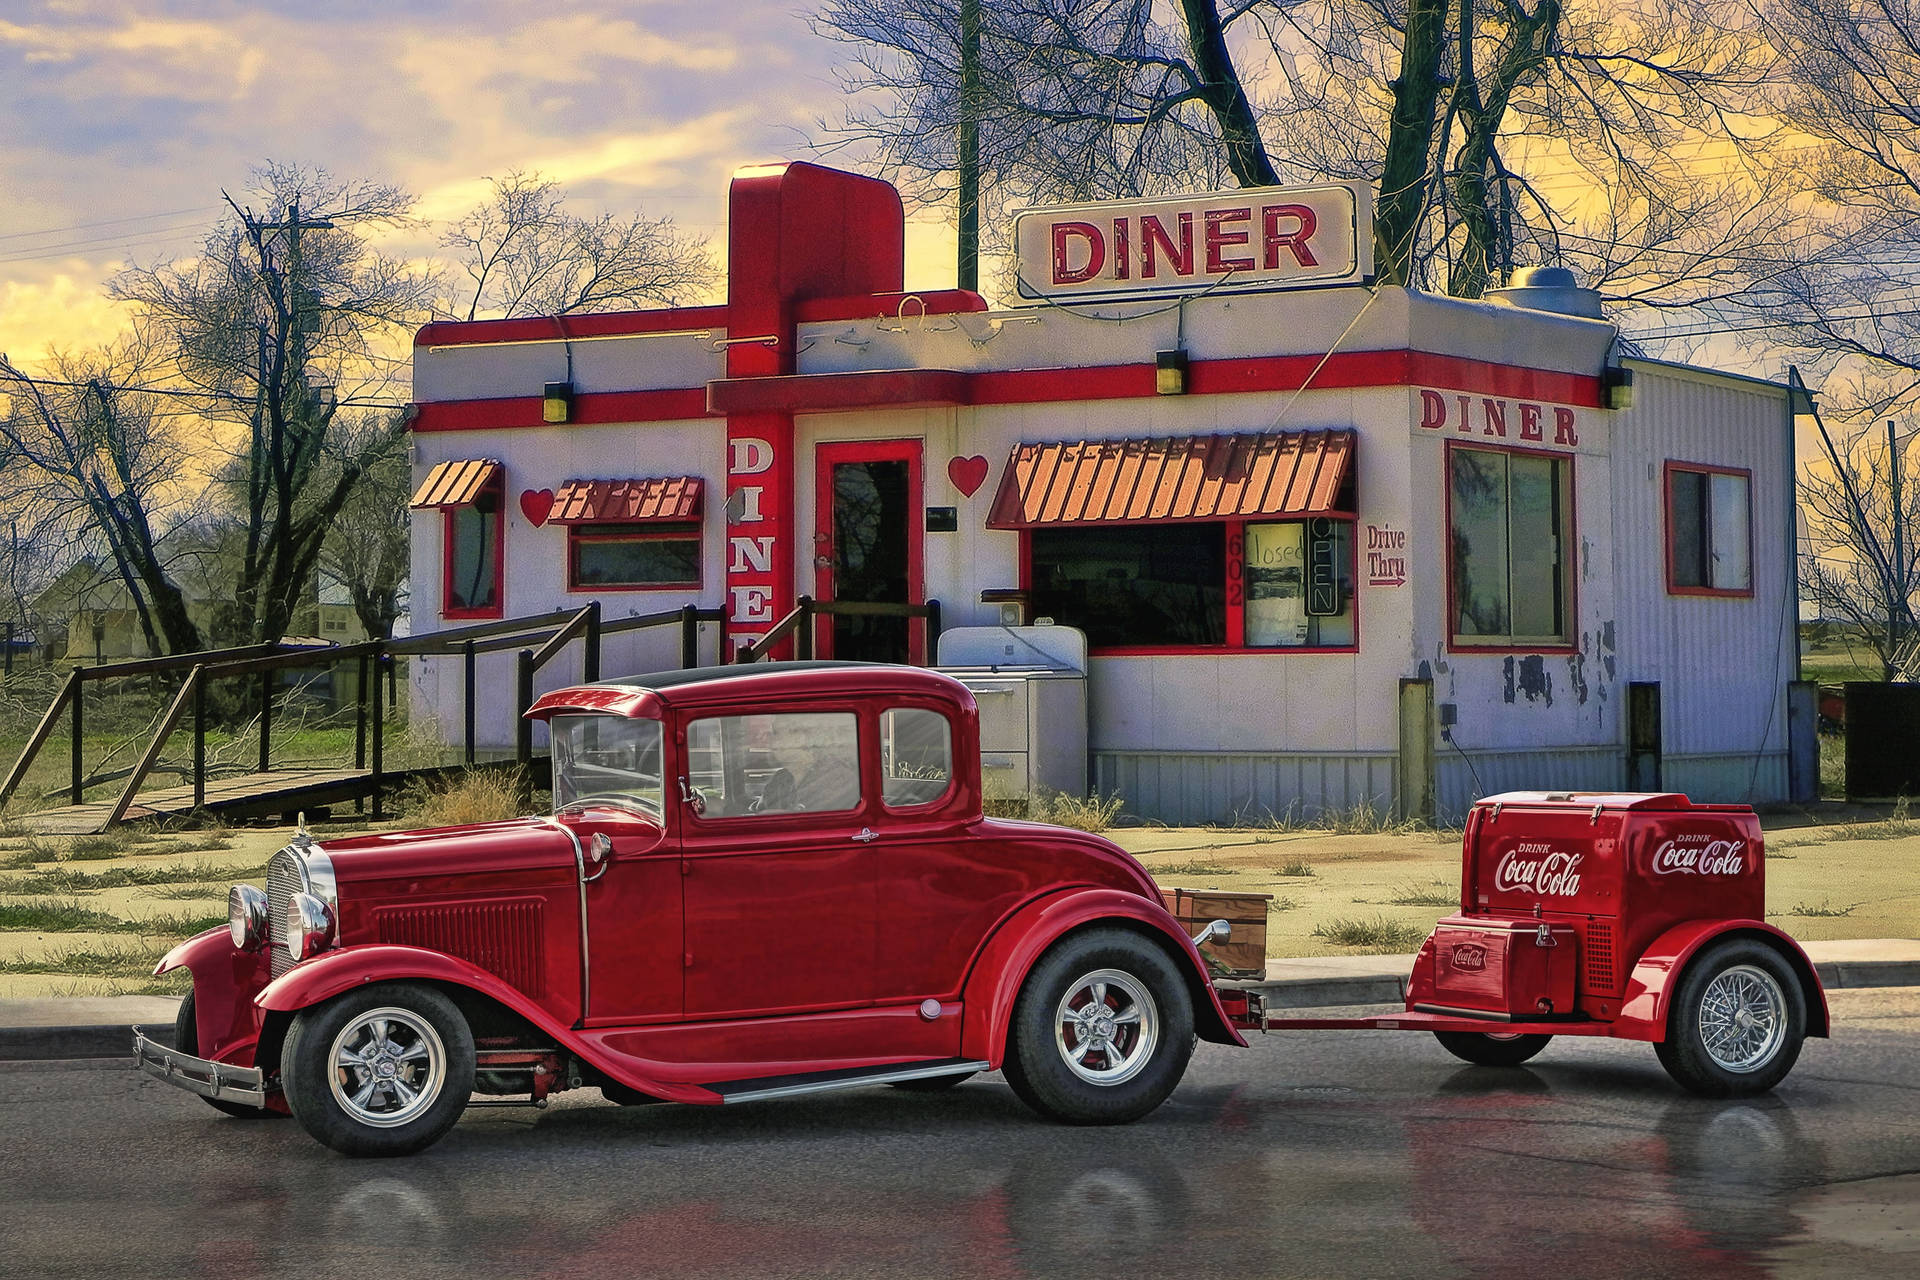 Retro 50s Diner With Coca-cola Memorabilia